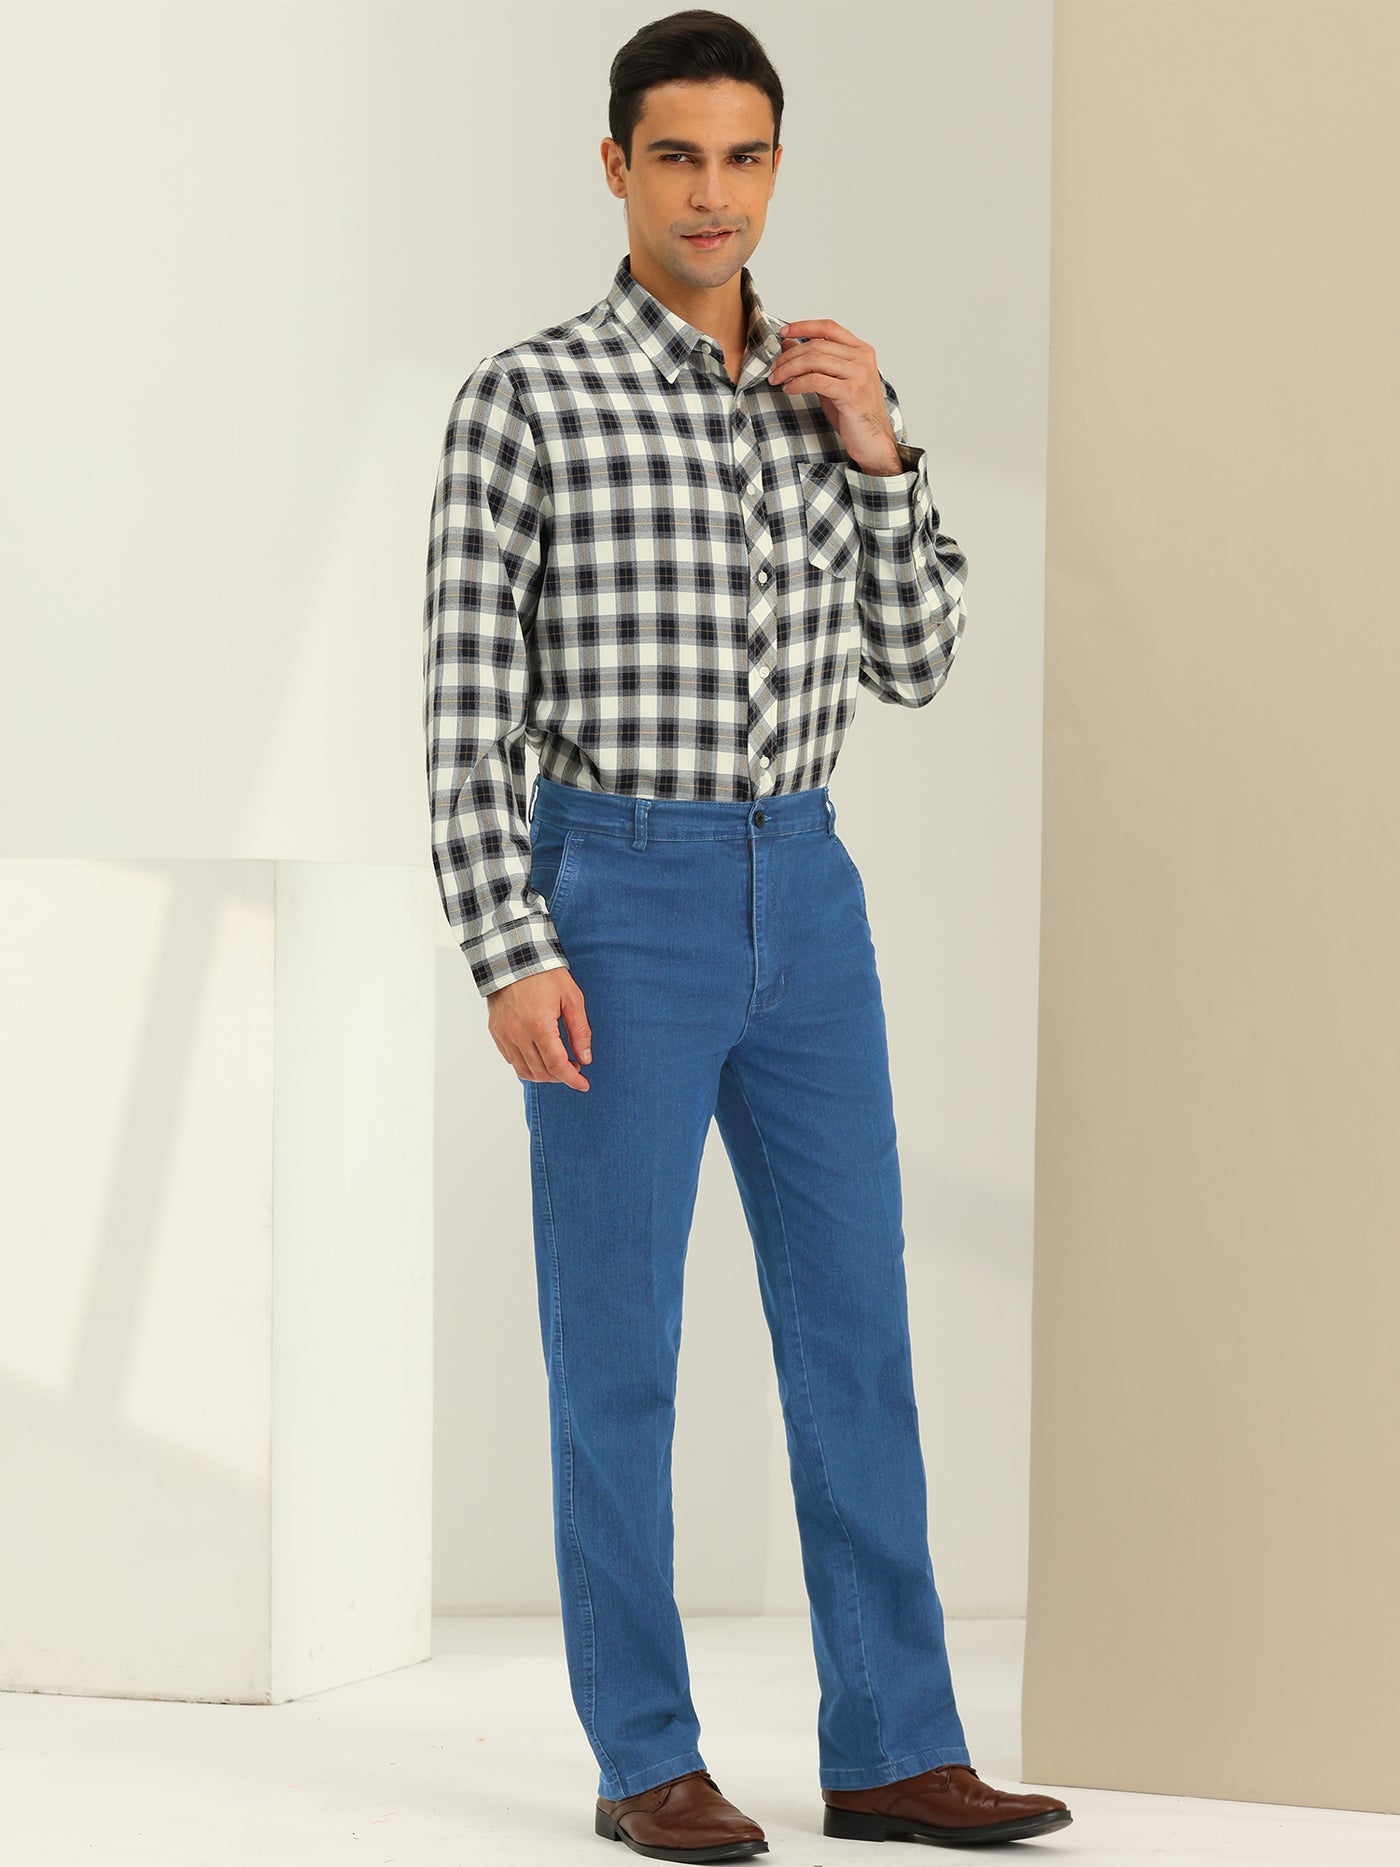 Bublédon Men's Jeans Classic Fit Straight Leg Comfy Jean Denim Pants